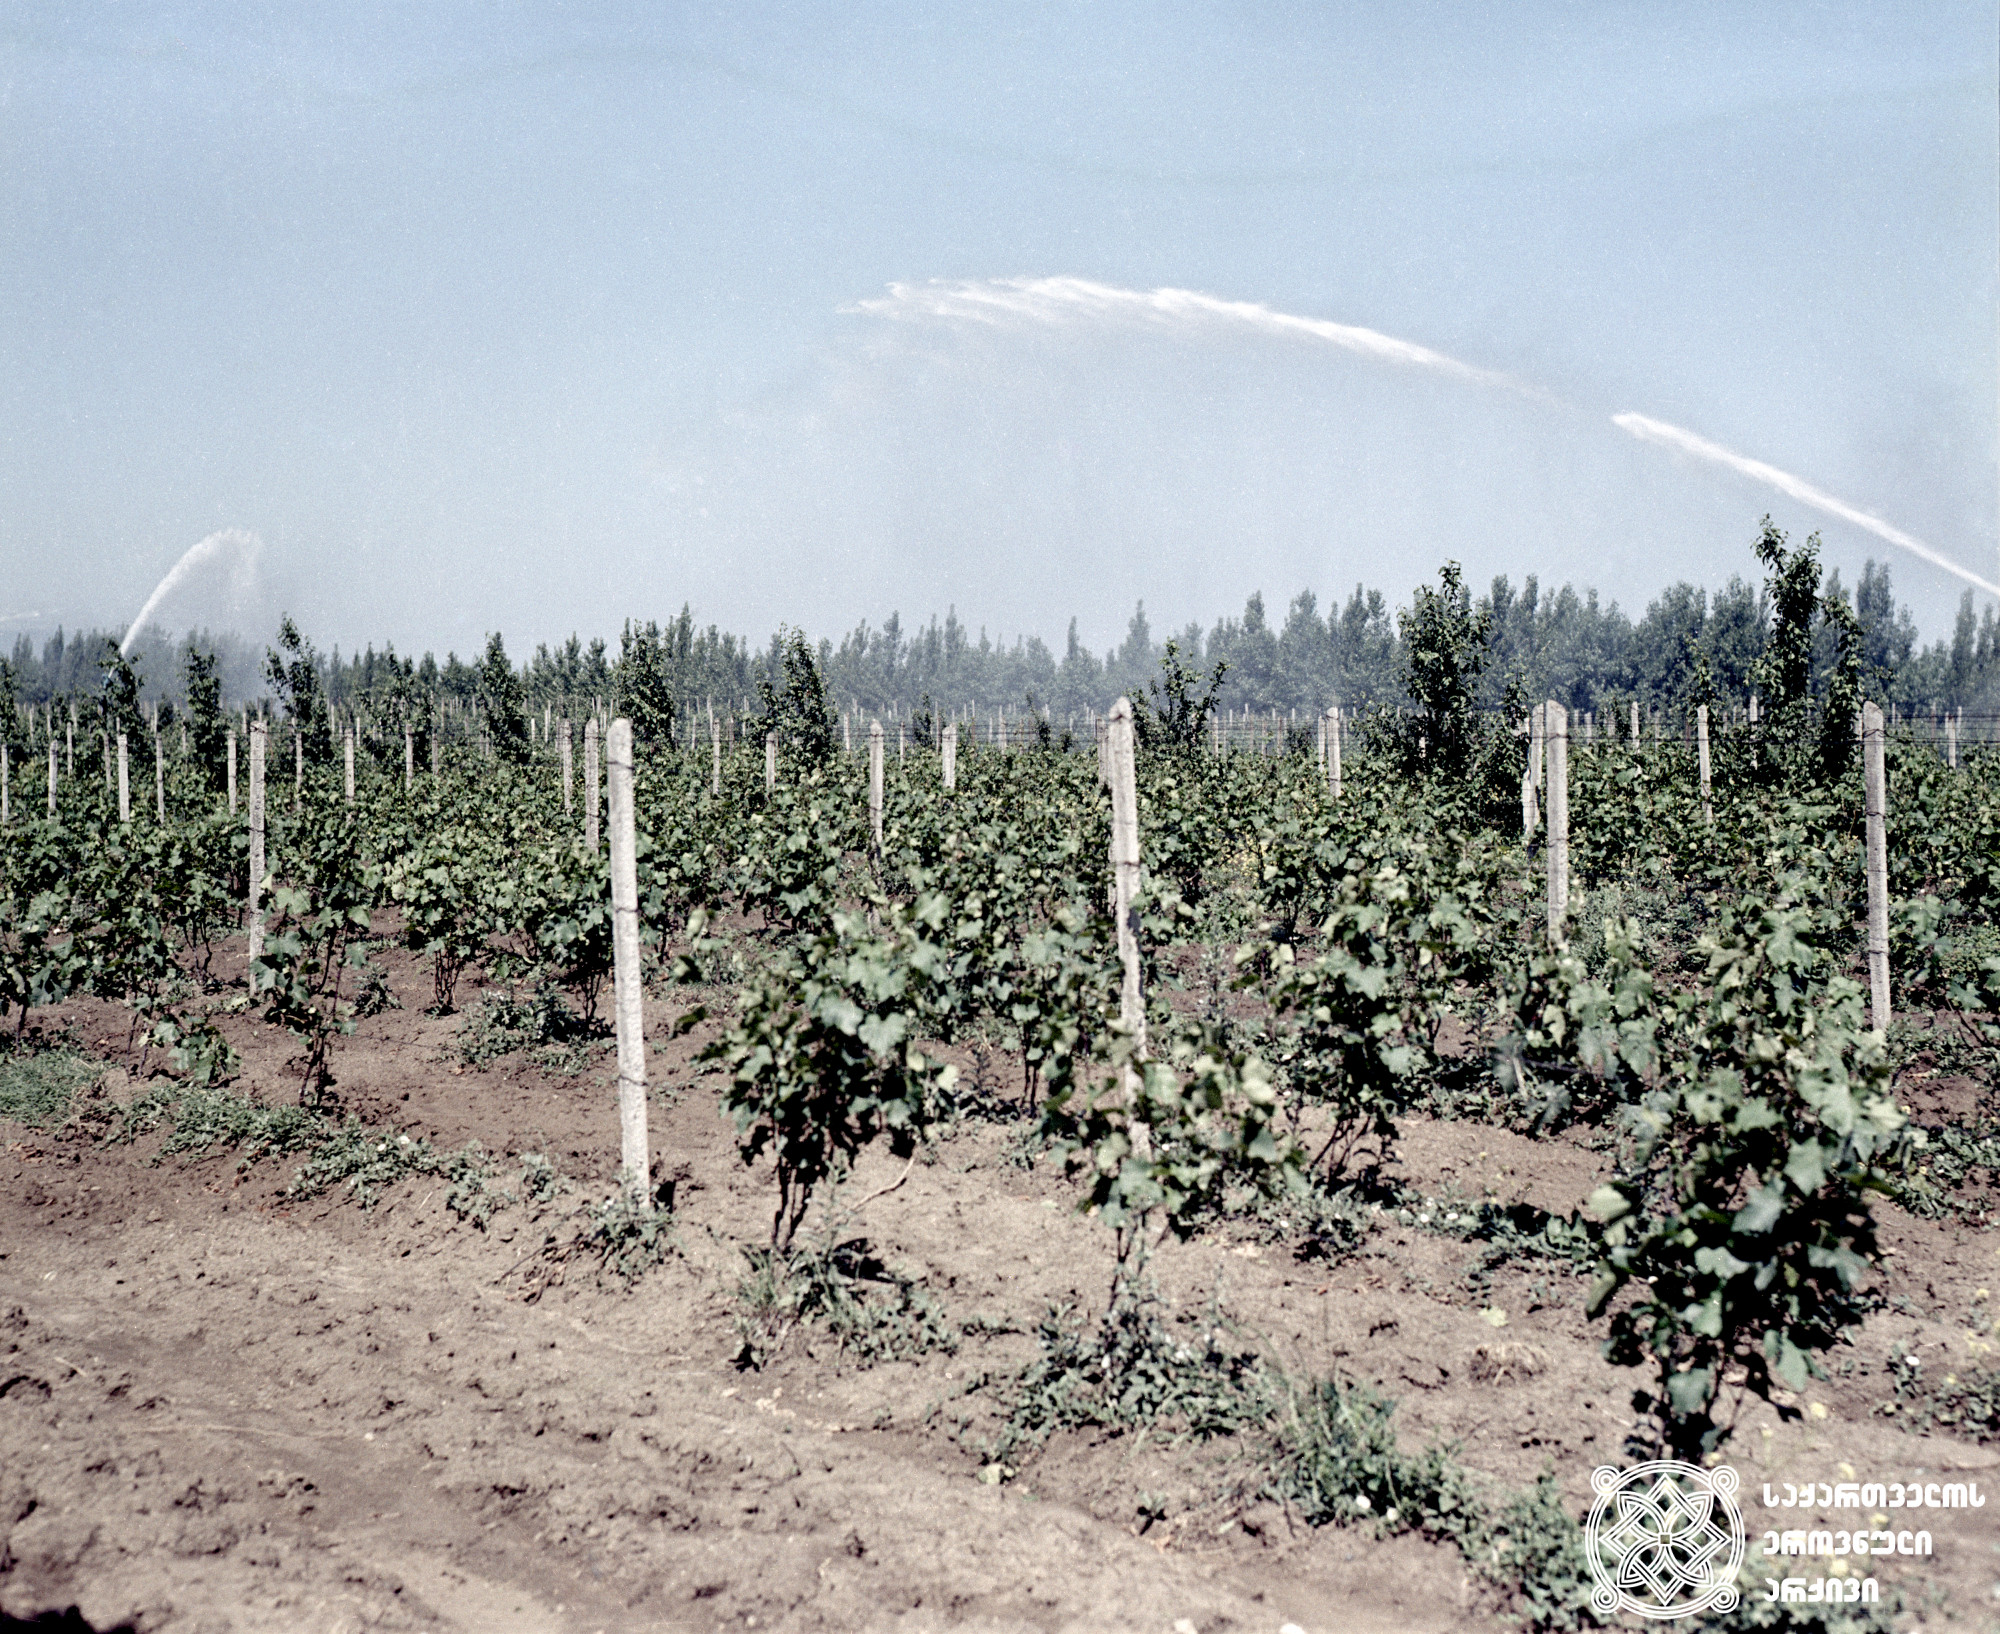 ვენახის მექანიზებული მორწყვა<br>
ფოტო: ვ. ავაკოვი <br>
1970 წელი <br>
Mechanized watering of the vineyard <br> 
Photo by V. Avakov <br>
1970